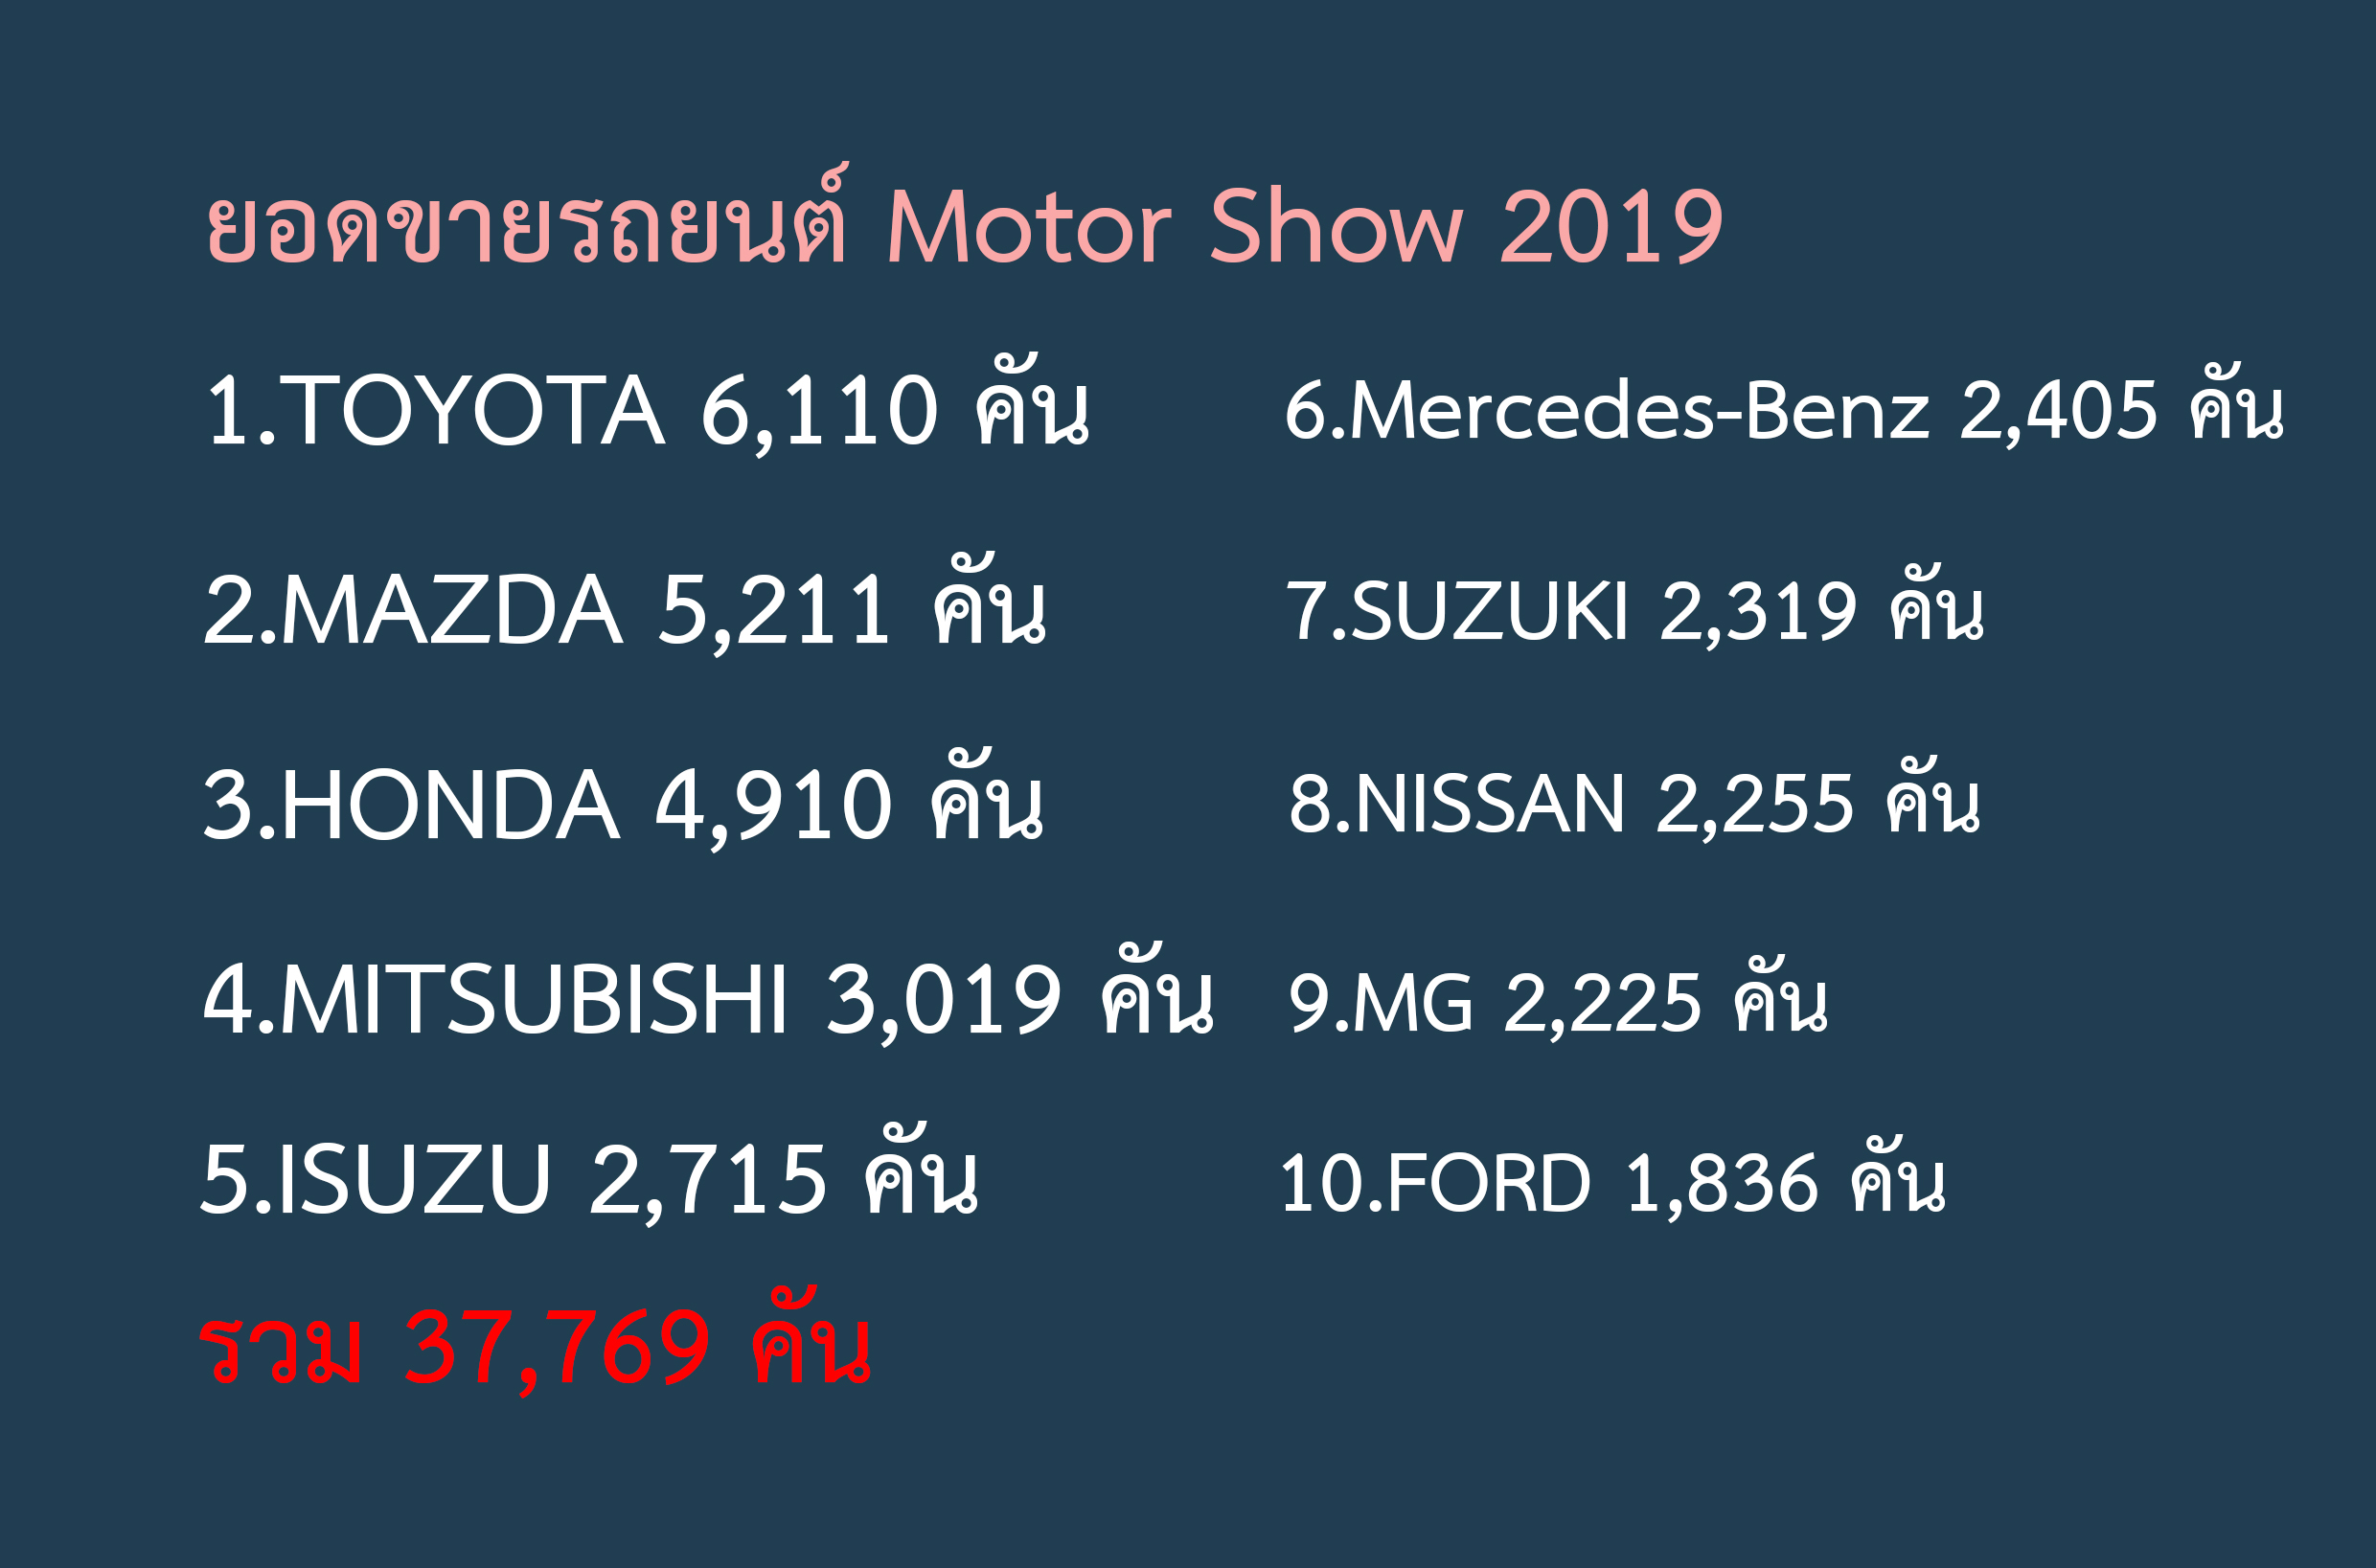 ยอดขายรถยนต์ Motor Show 2019 รวม 37,769 คัน